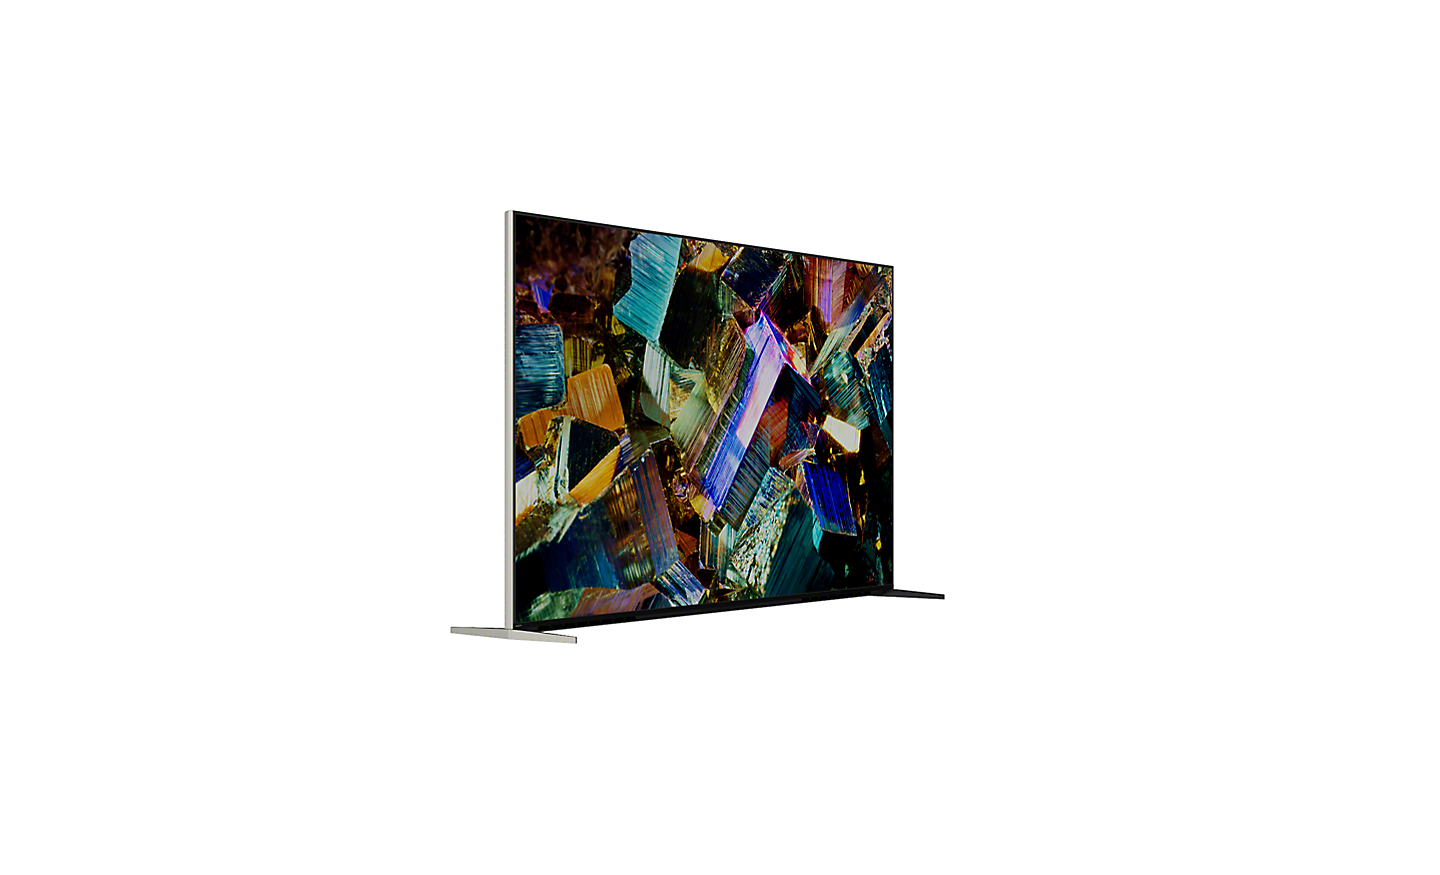 عارض 360 منزلق للسلسلة Z9K يعرض منظر 360 درجة للتلفزيون ولقطة شاشة لبلورات ملونة